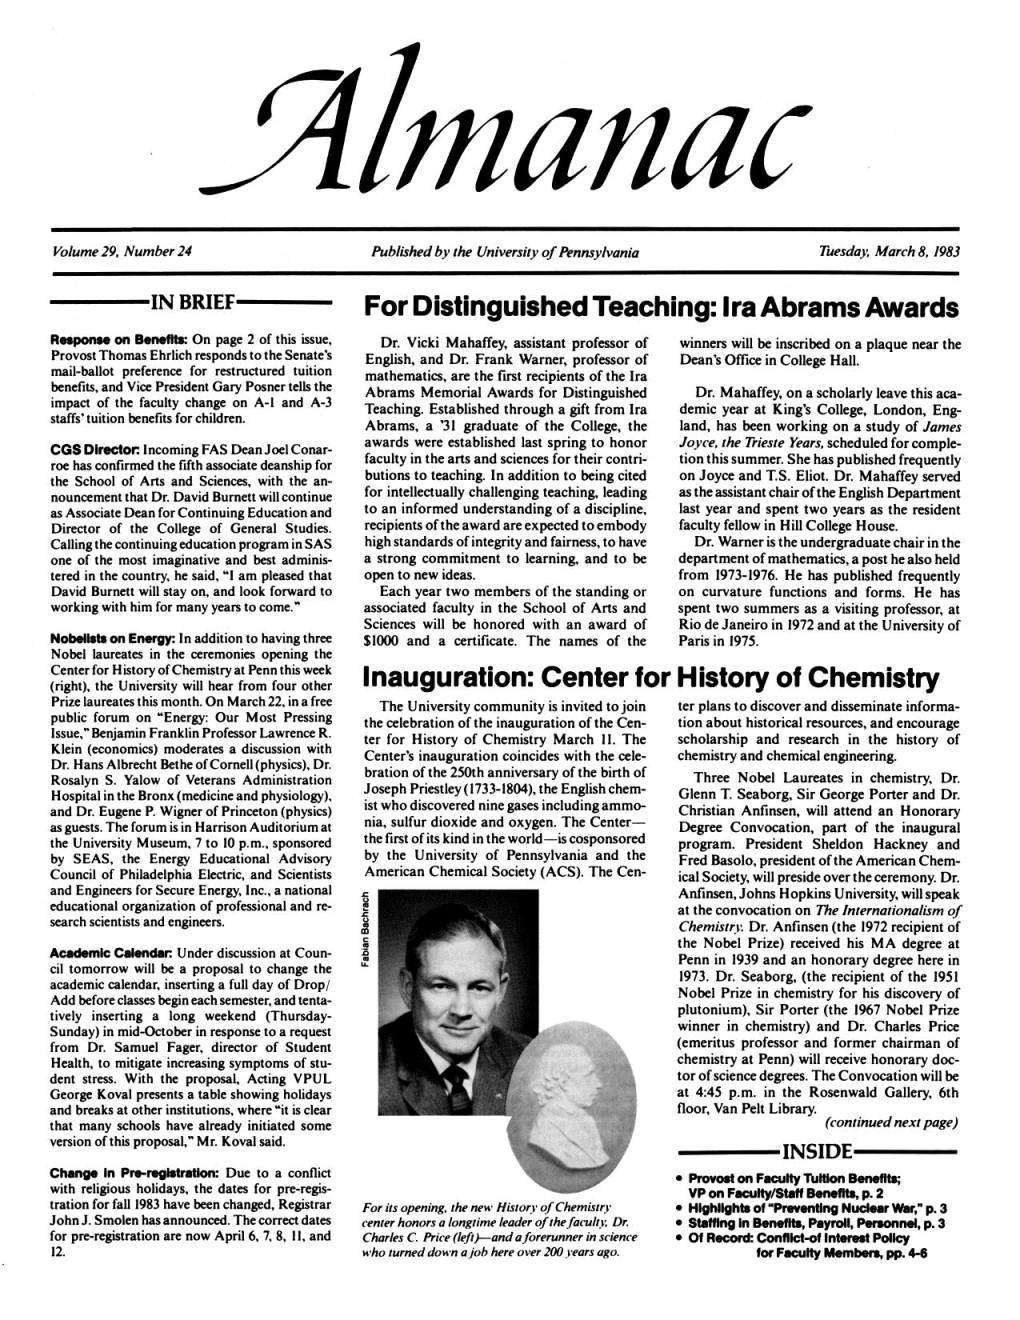 Almanac, 03/08/83, Vol. 29, No. 24